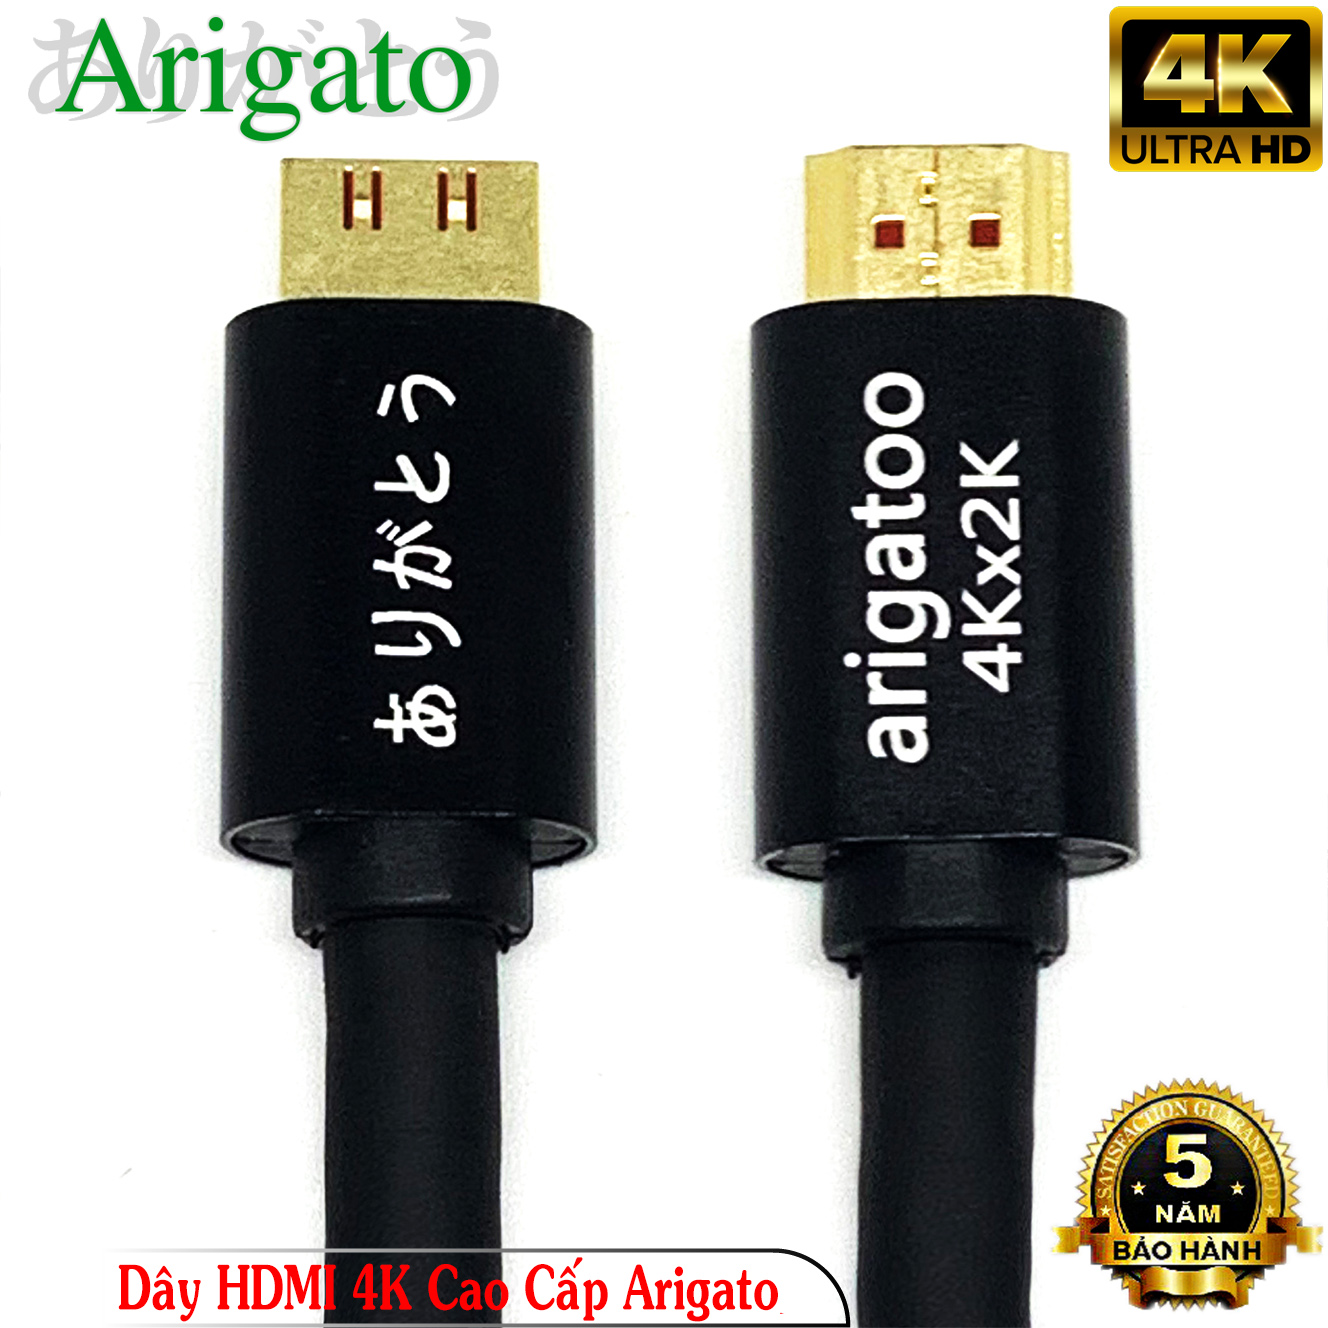 Dây HDMI 20M Arigatoo Chuẩn 4K Xịn